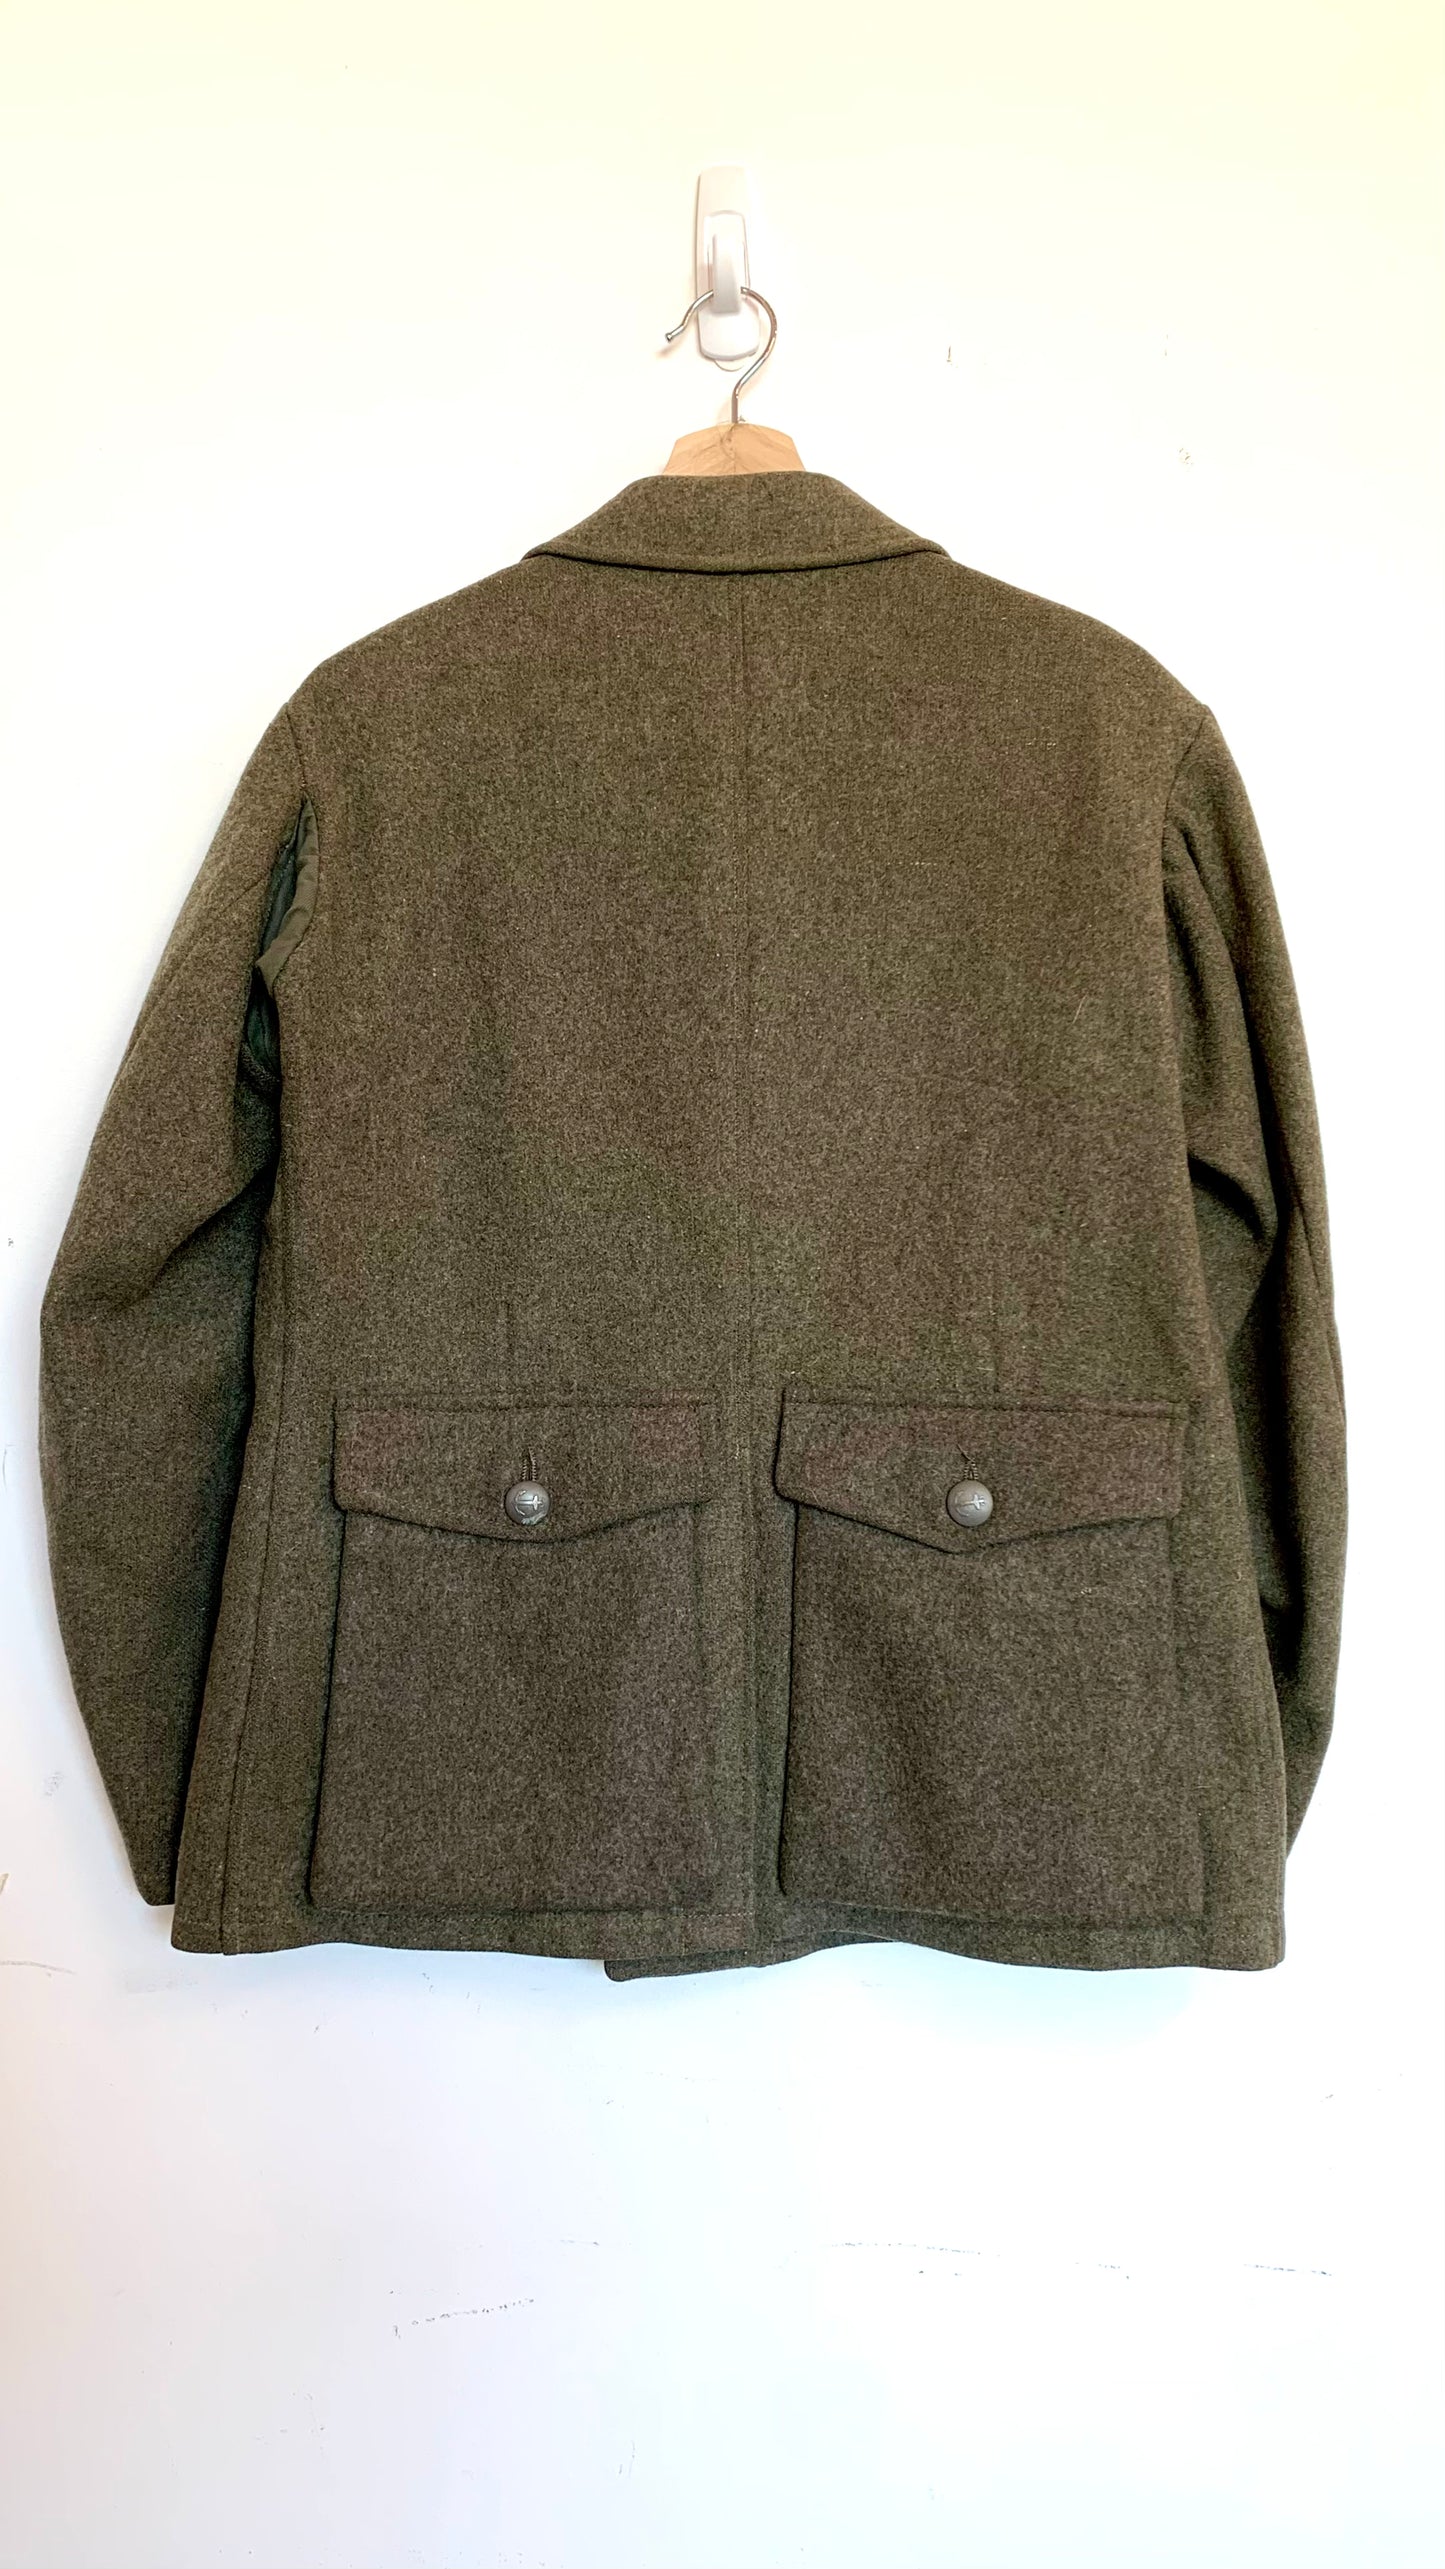 Vintage khaki wool military jacket